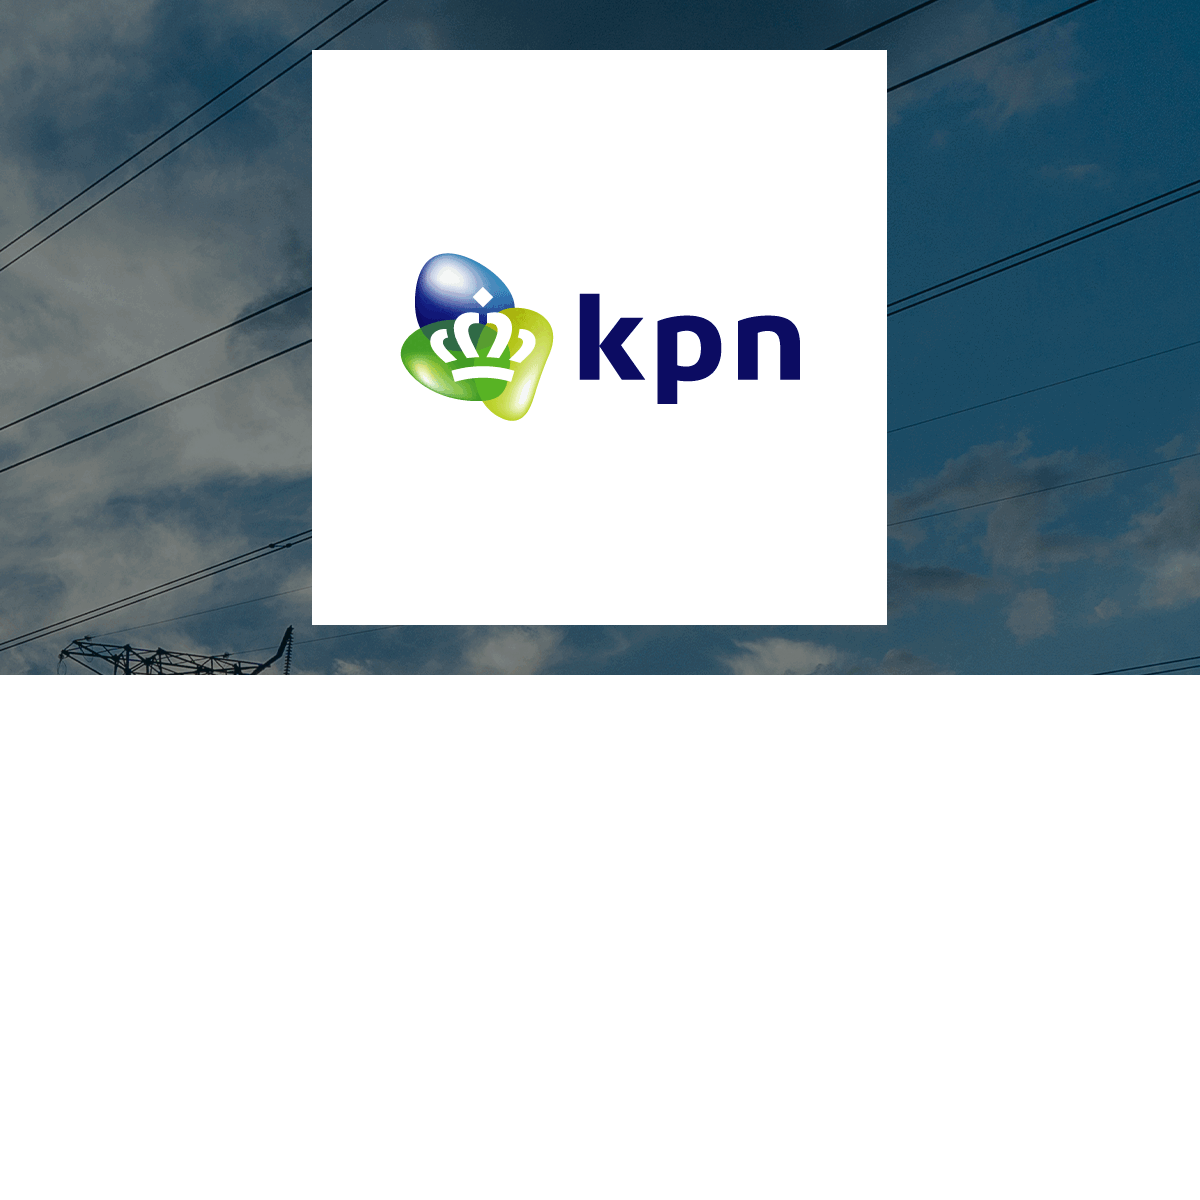 Koninklijke KPN logo with Utilities background